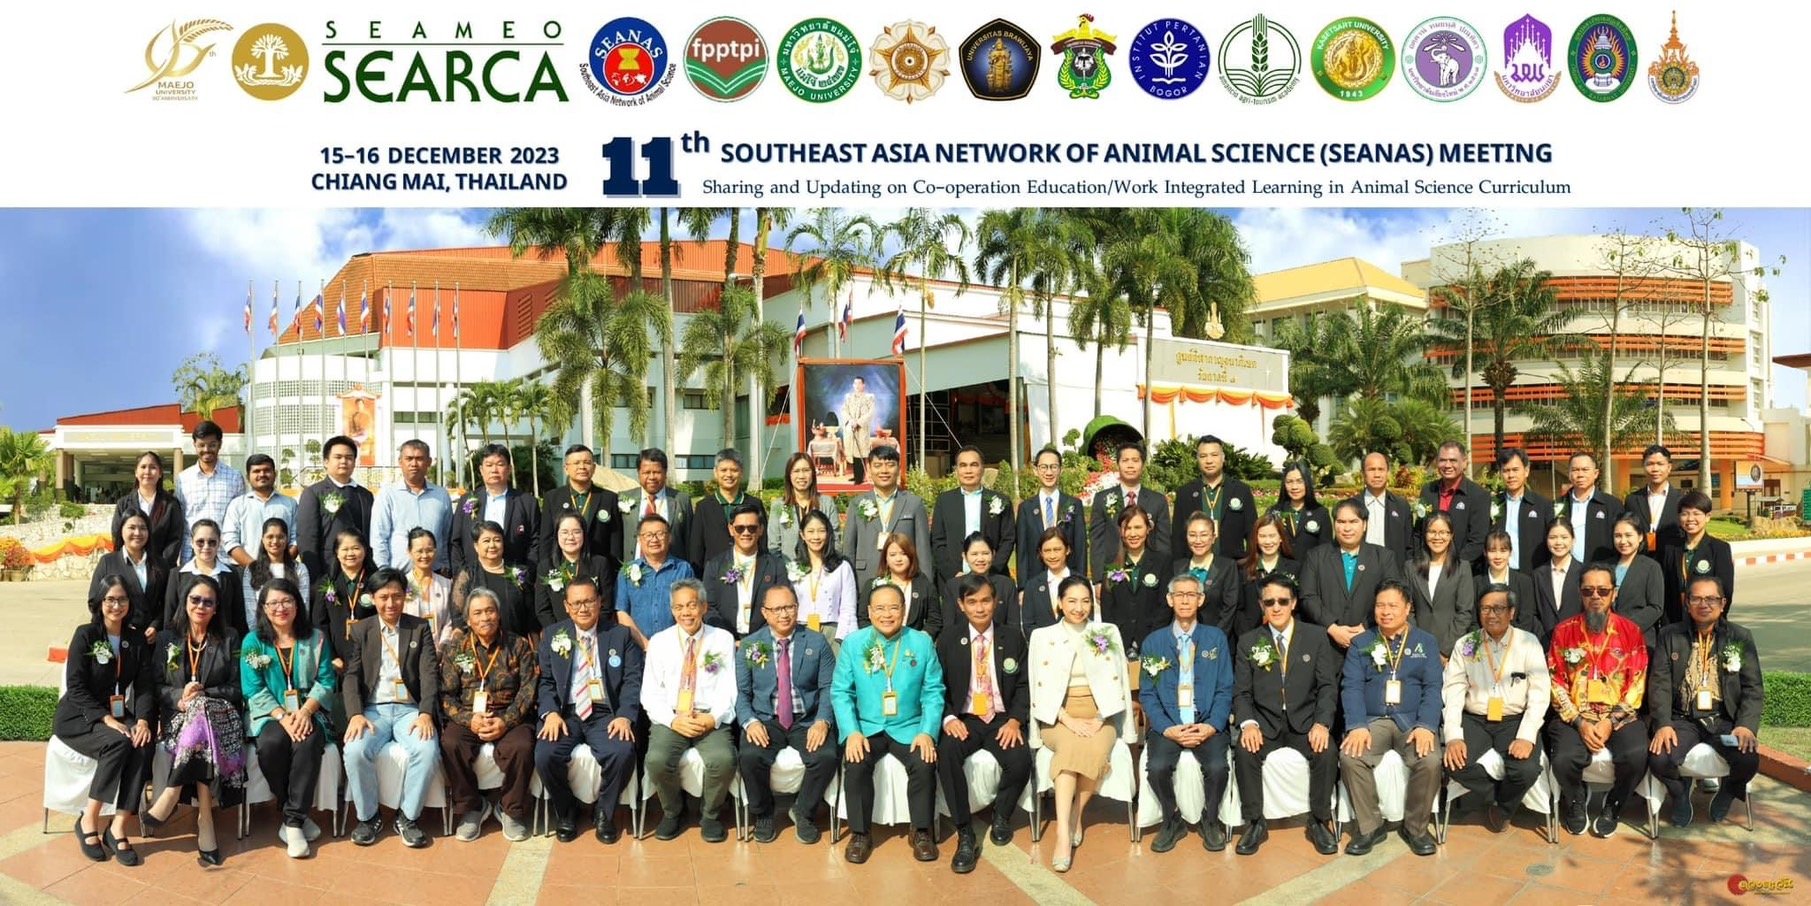 หลักสูตรสัตวศาสตร์ ม.พะเยา สร้างเครือข่ายความร่วมมือด้านการศึกษา ในการประชุมภาคีเครือข่ายด้านสัตวศาสตร์แห่งภูมิภาคเอเชียตะวันออกเฉียงใต้ ครั้งที่ 11 Southeast Asia Network of Animal Science (SEANAS)